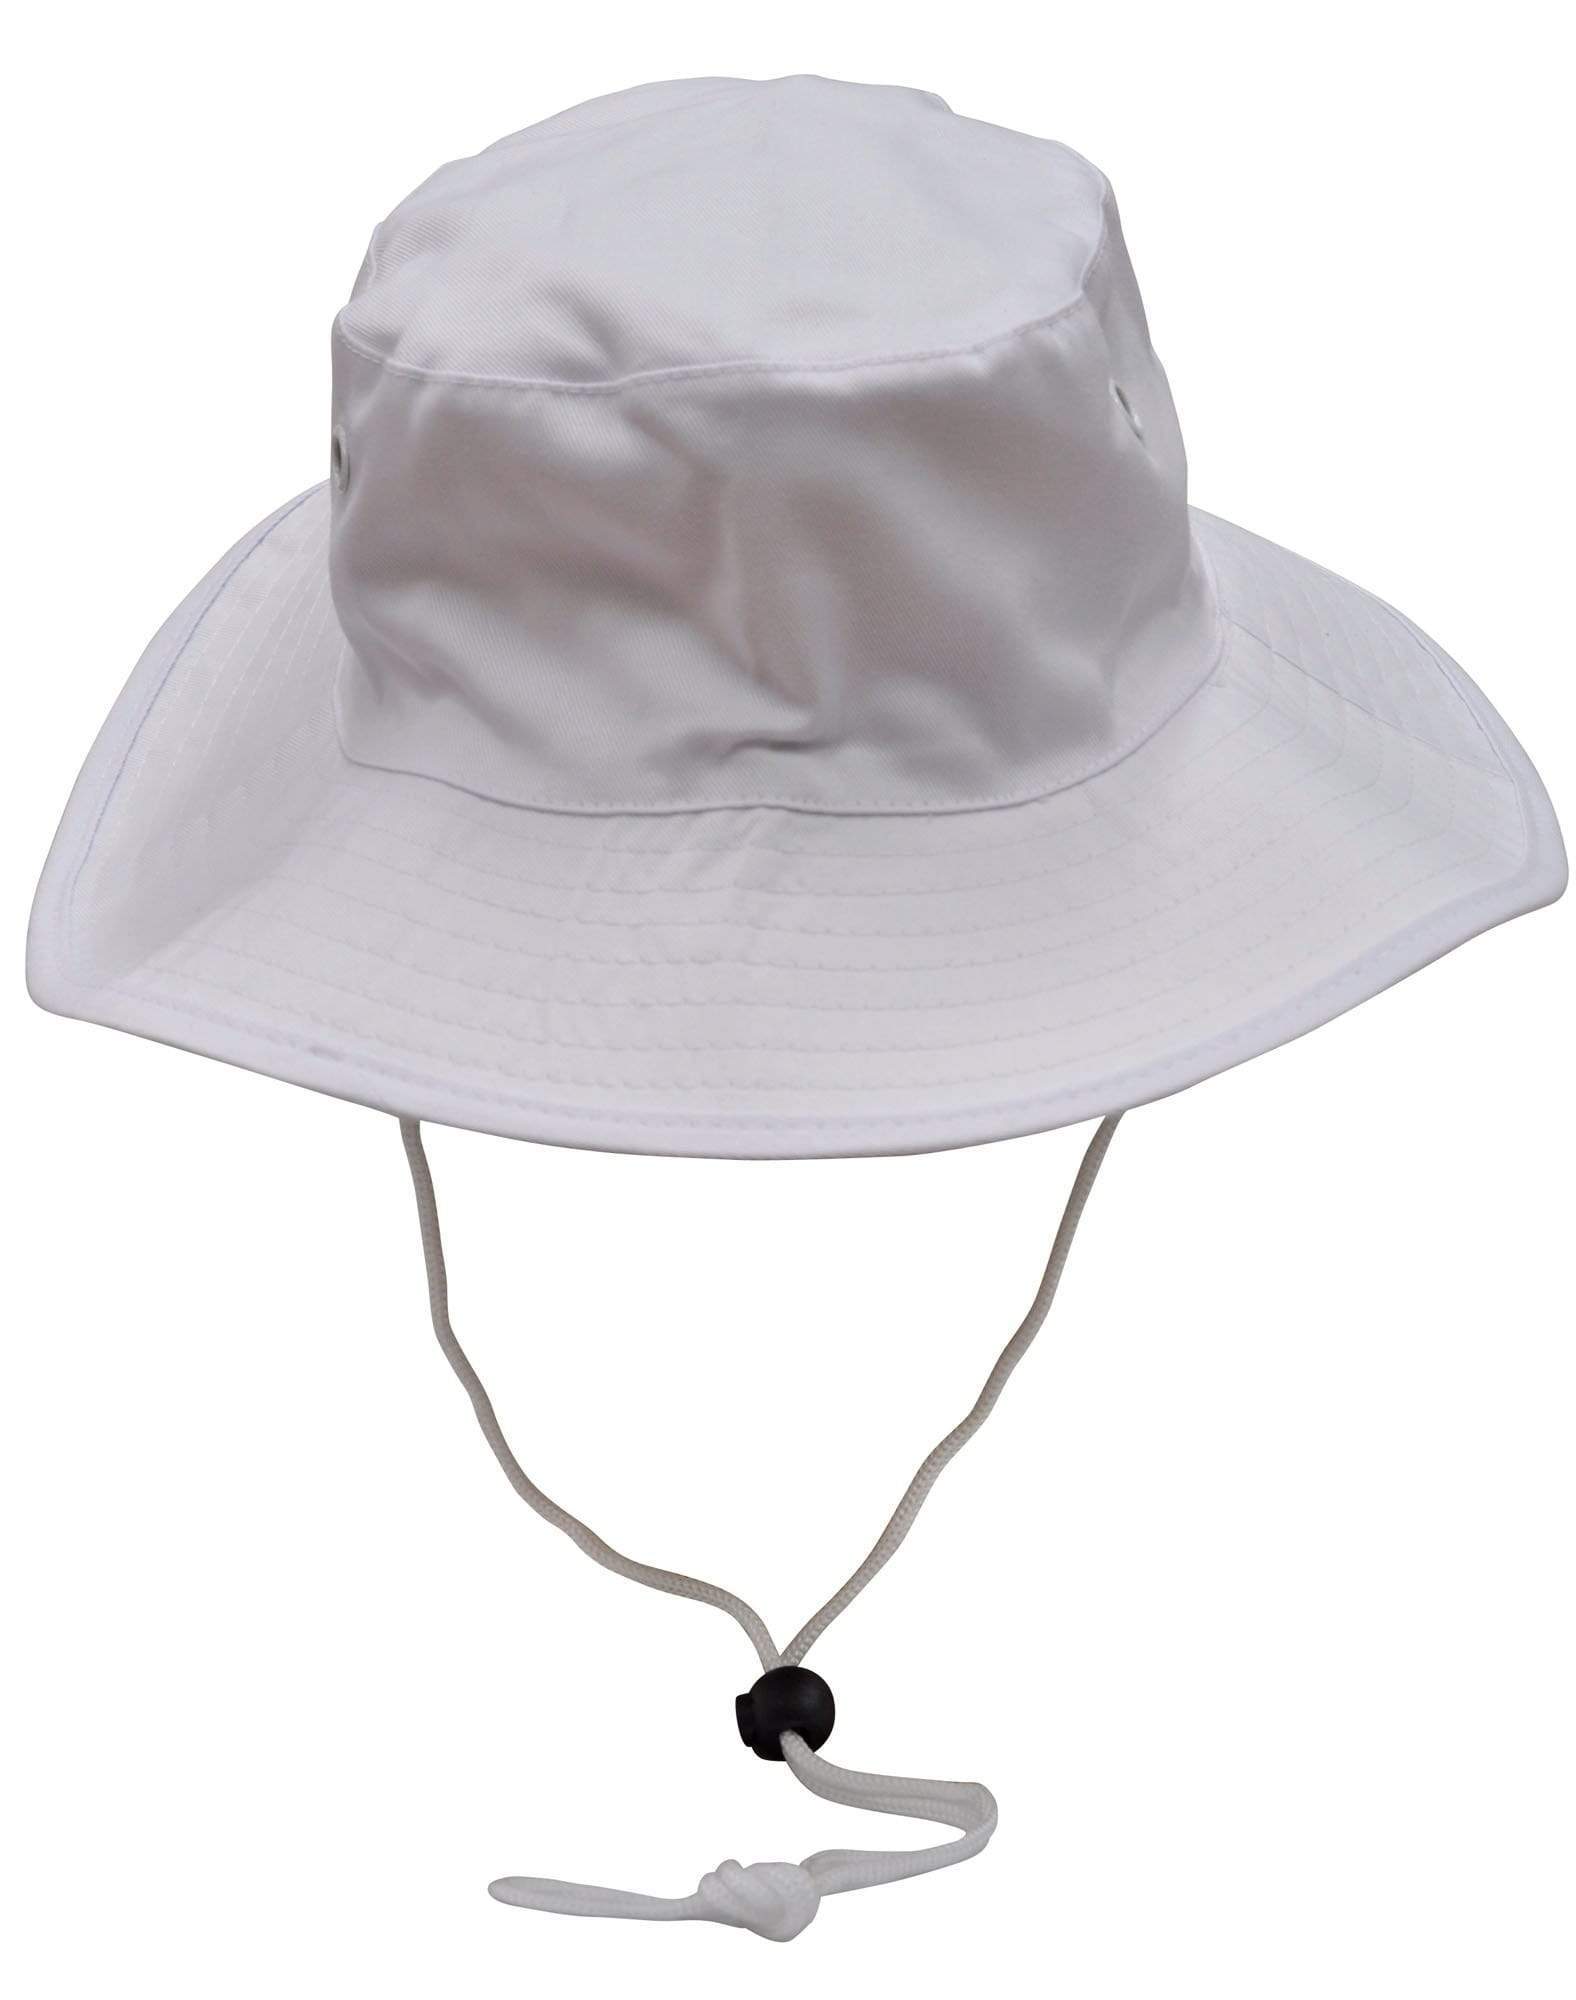 Surf Hat With Break-away Strap H1035 Active Wear Winning Spirit White S 